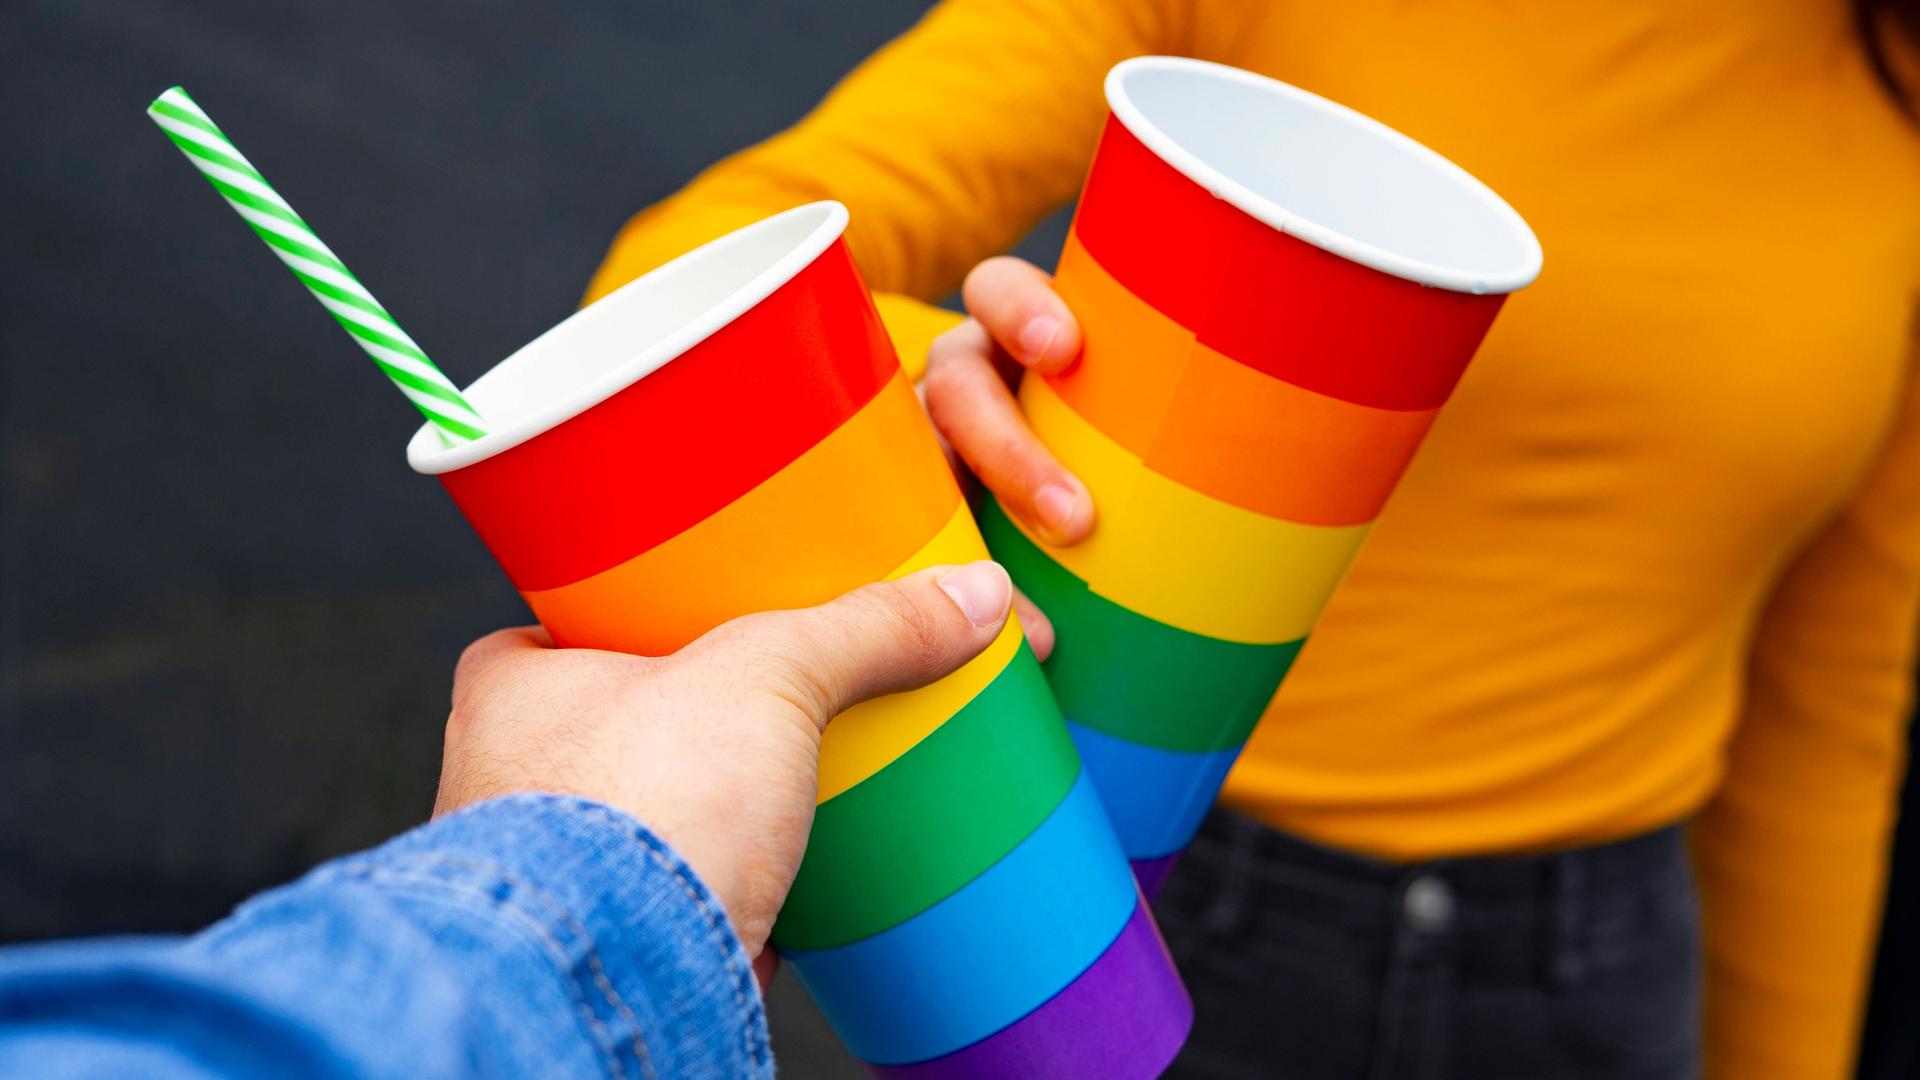 Zwei Menschen stoßen an mit Bechern in Regenbogenfarben. Die Farbkombination steht auch für die Vielfalt menschlichen Lebens und Liebens.